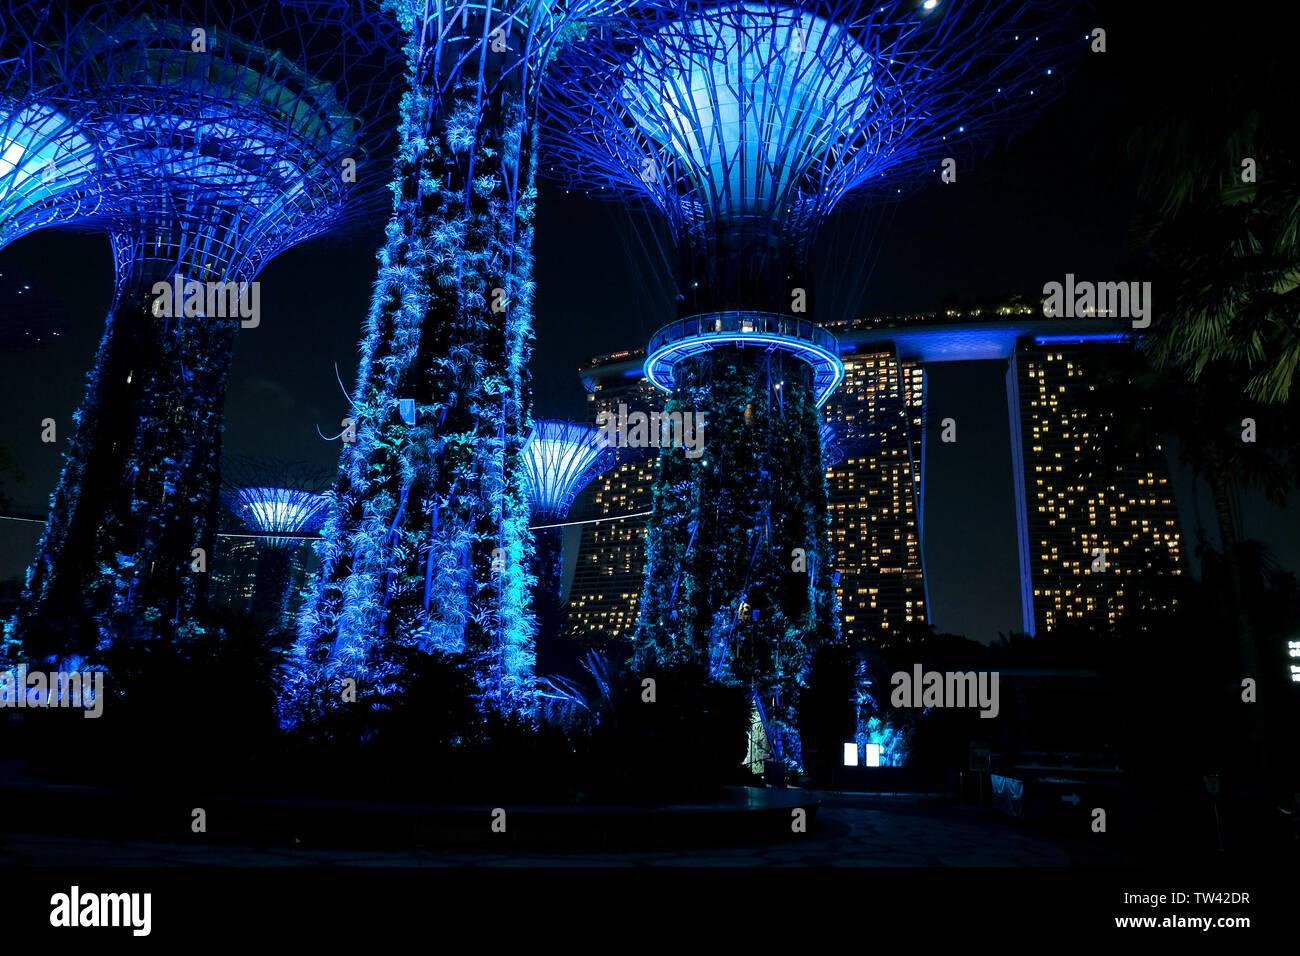 Un basso angolo night shot dei giardini dalla baia immersa in un bagno di luce blu in Singapore con il Marina Bay hotel in background Foto Stock